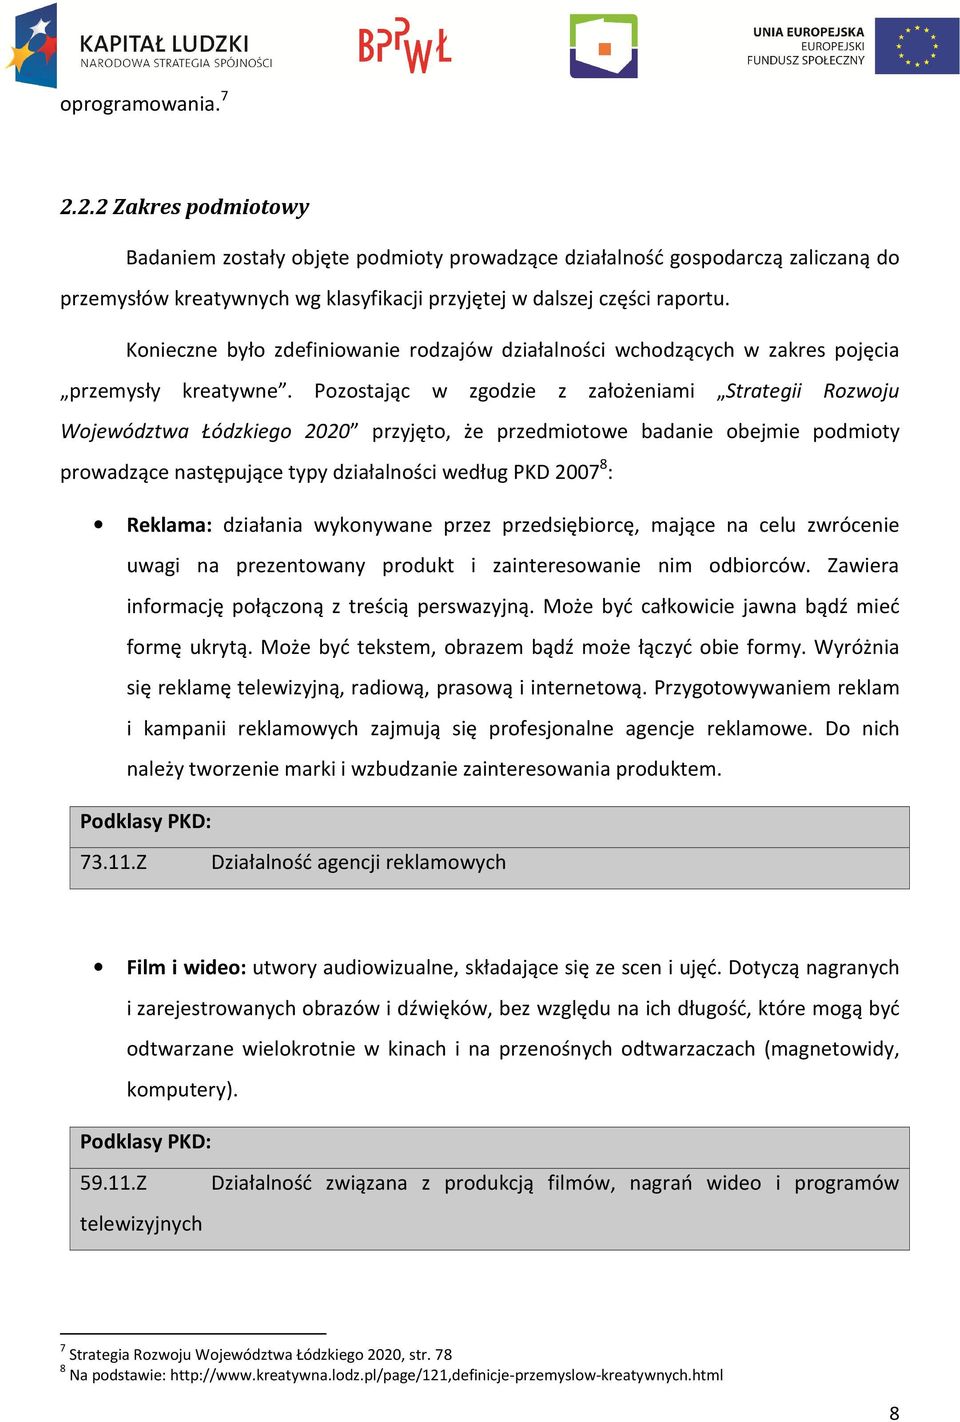 Pozostając w zgodzie z założeniami Strategii Rozwoju Województwa Łódzkiego 2020 przyjęto, że przedmiotowe badanie obejmie podmioty prowadzące następujące typy działalności według PKD 2007 8 :